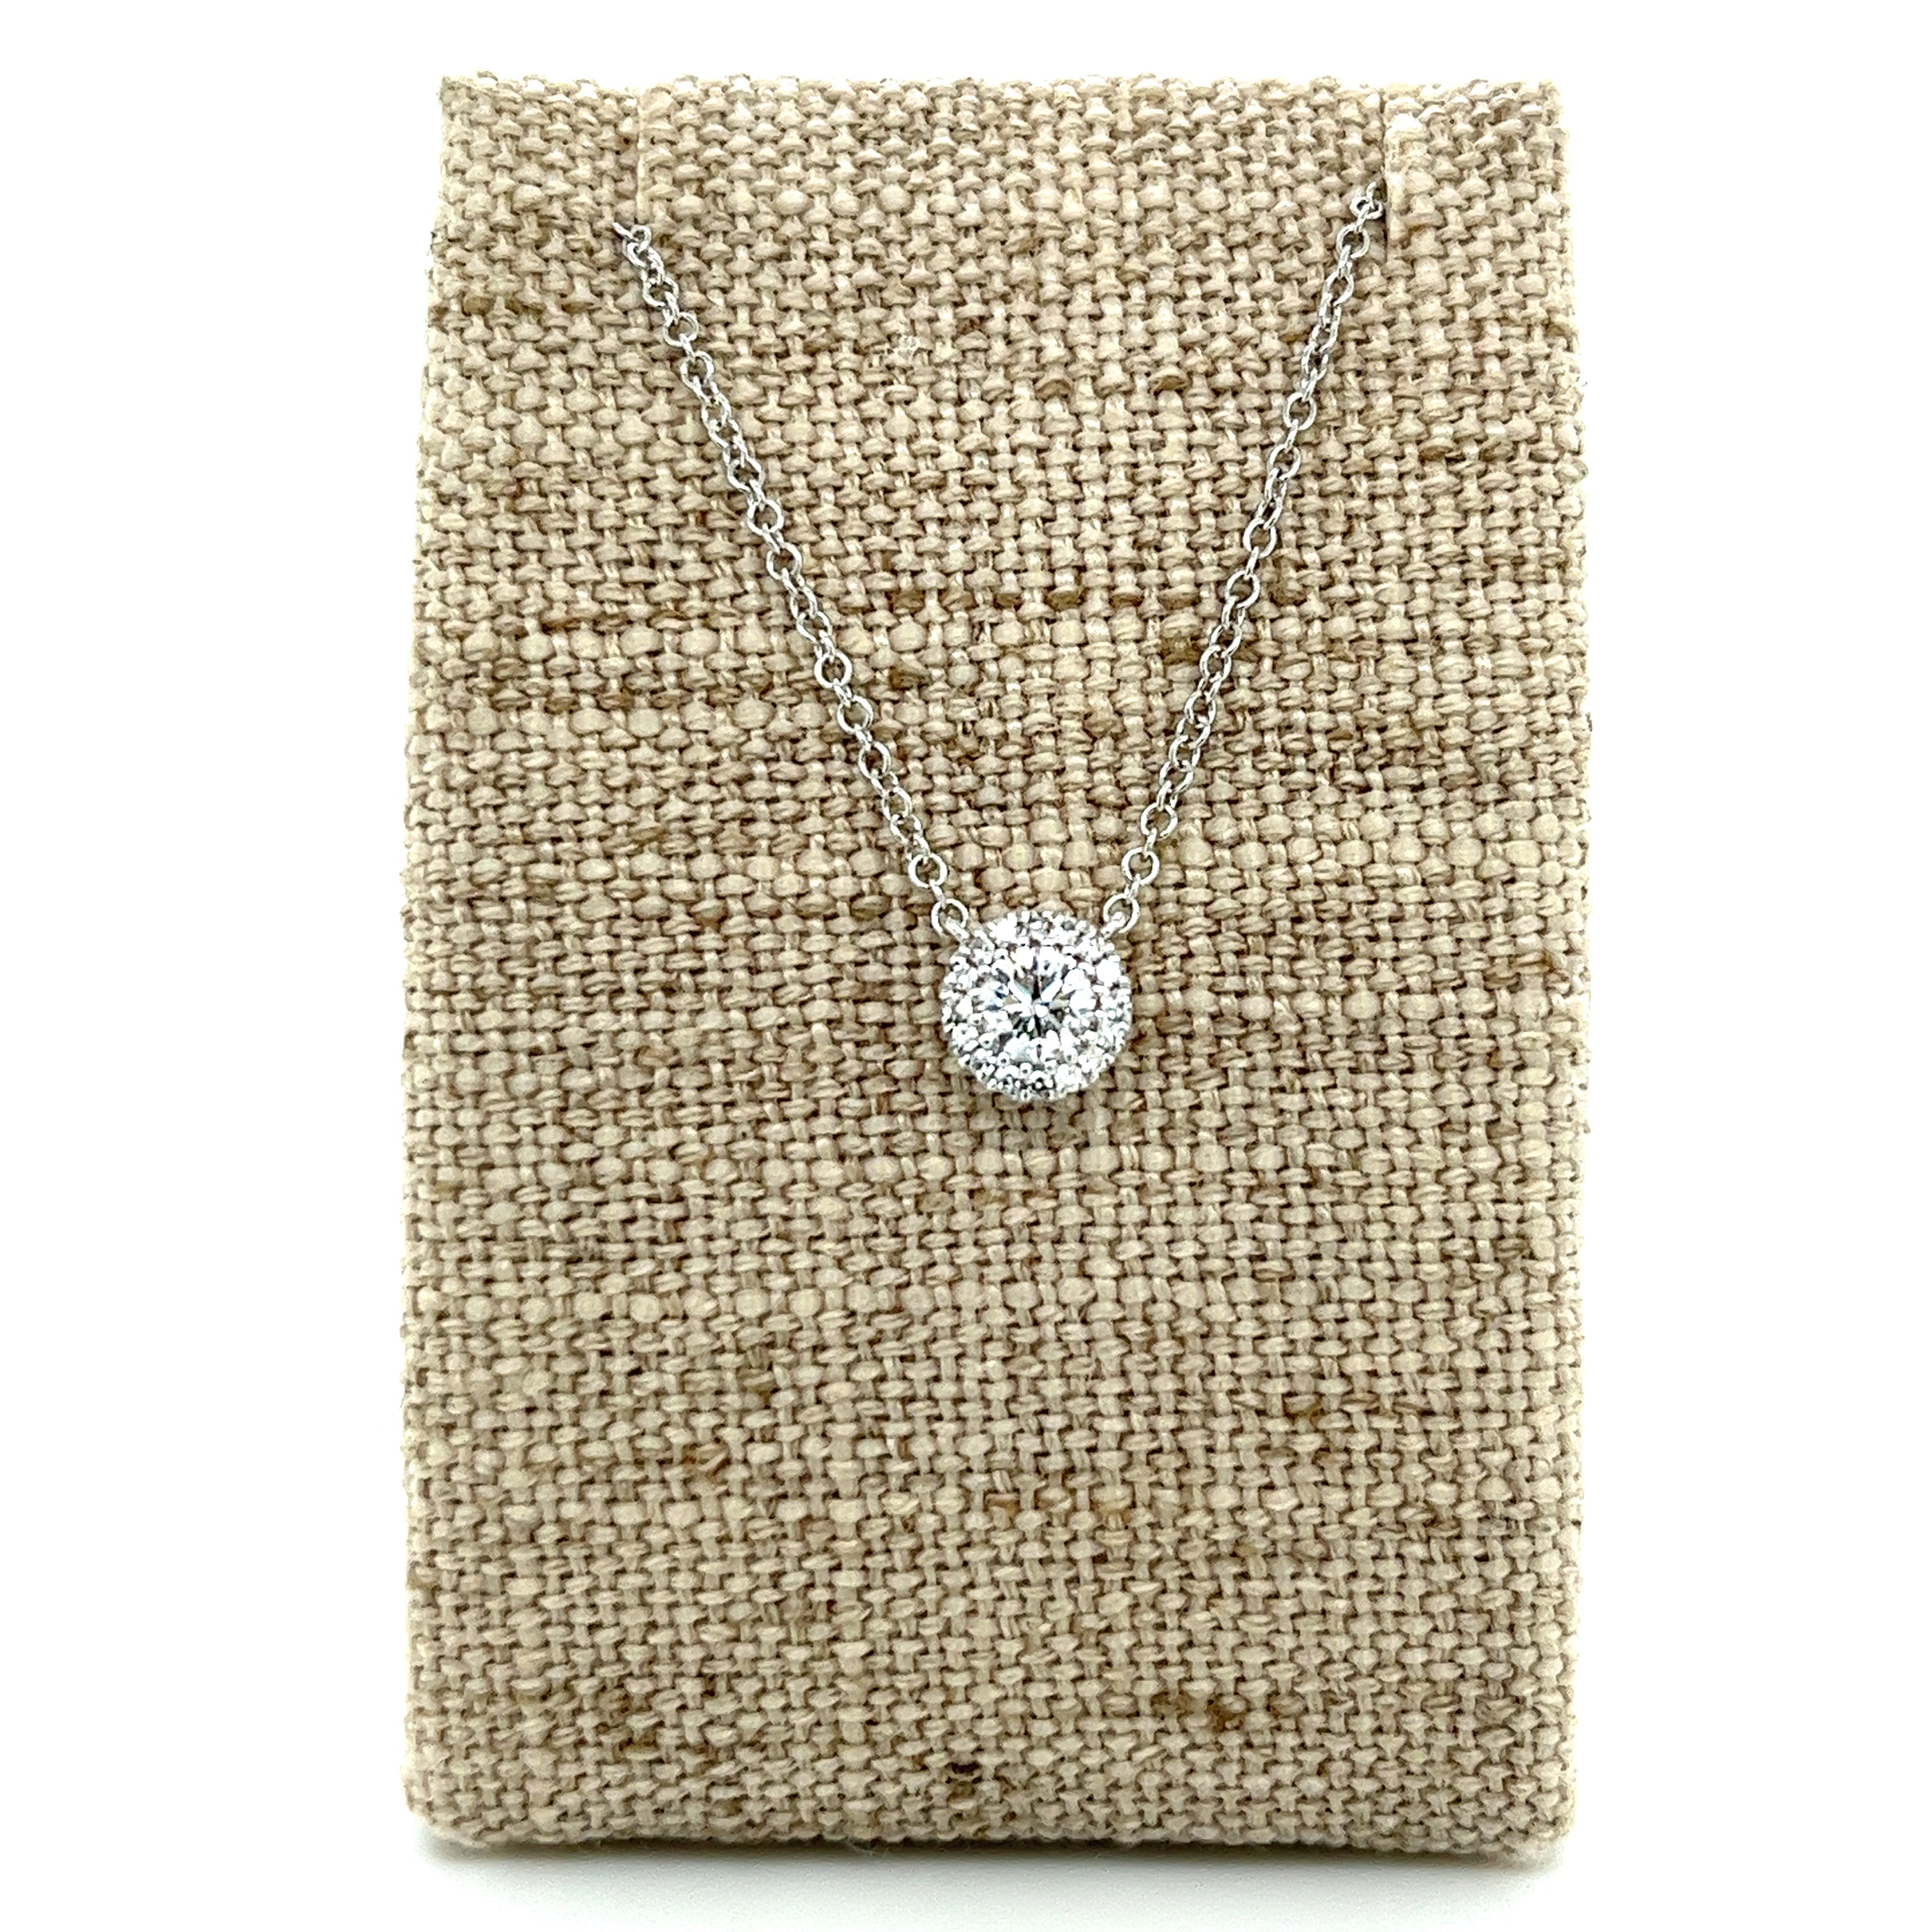 Dazzling Diamond Necklace by Snaffle Bit Bracelet Company